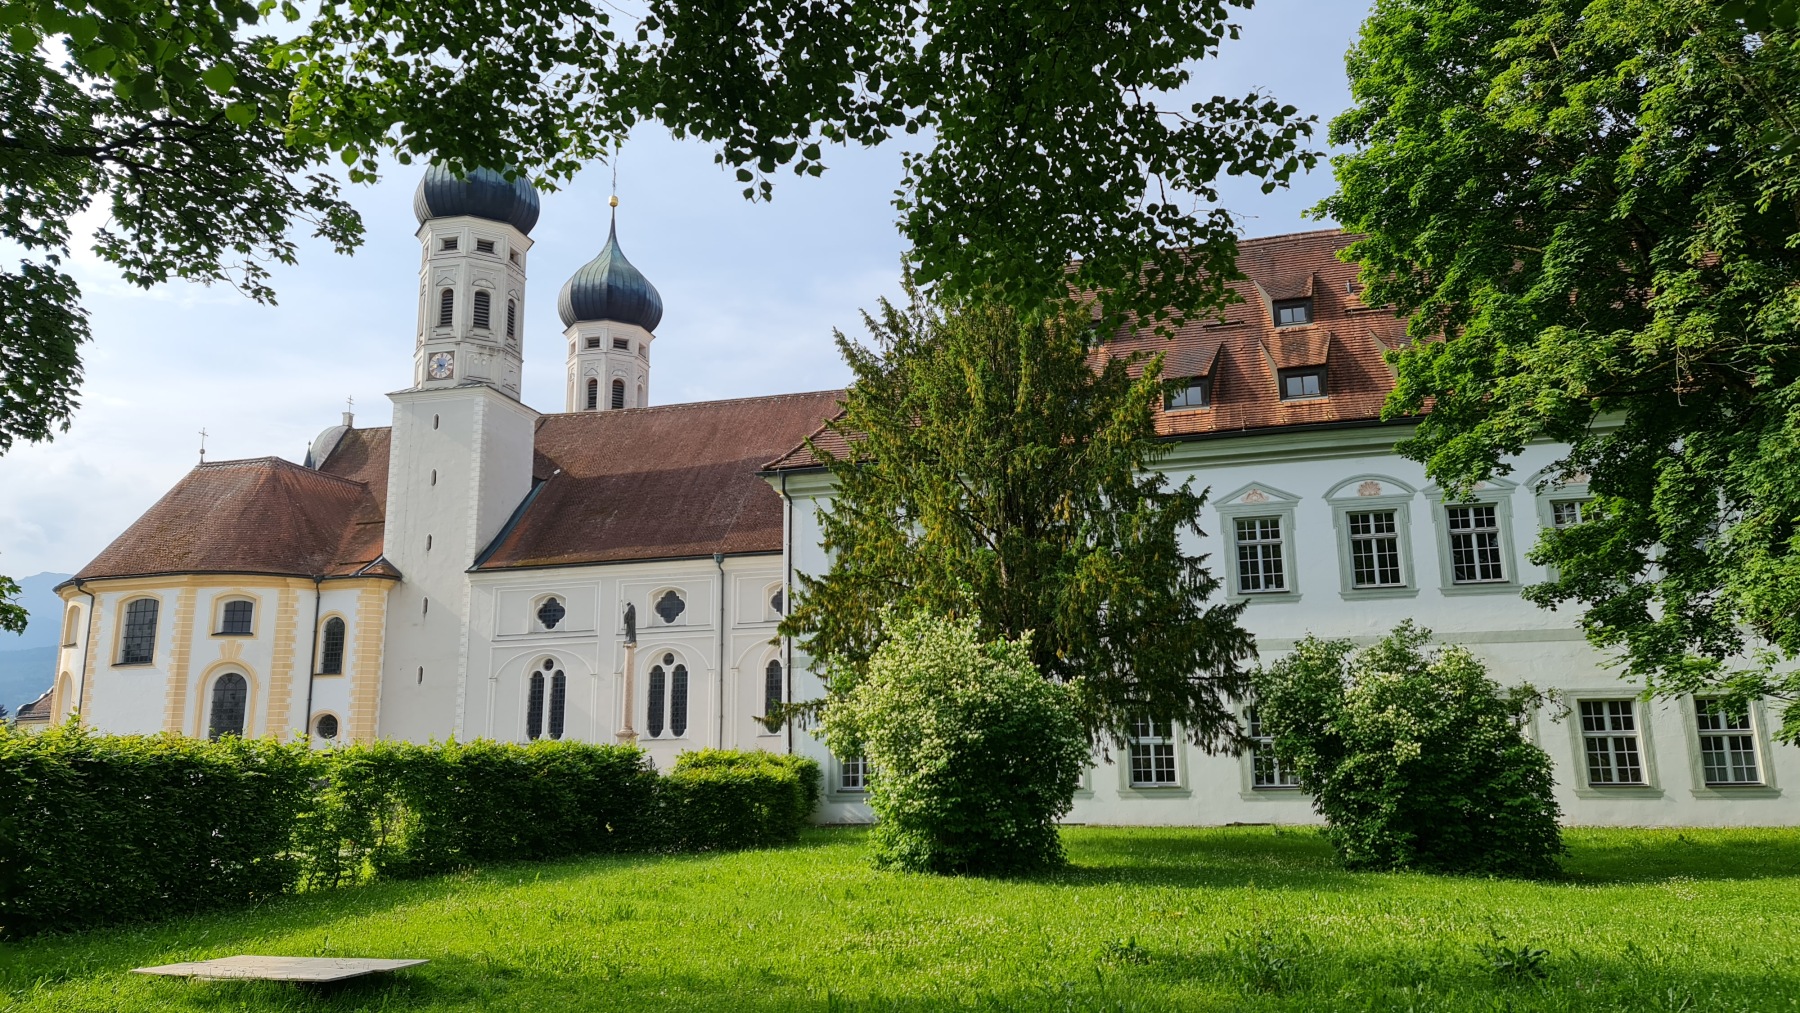 Radtour zum Kloster Benediktbeuern